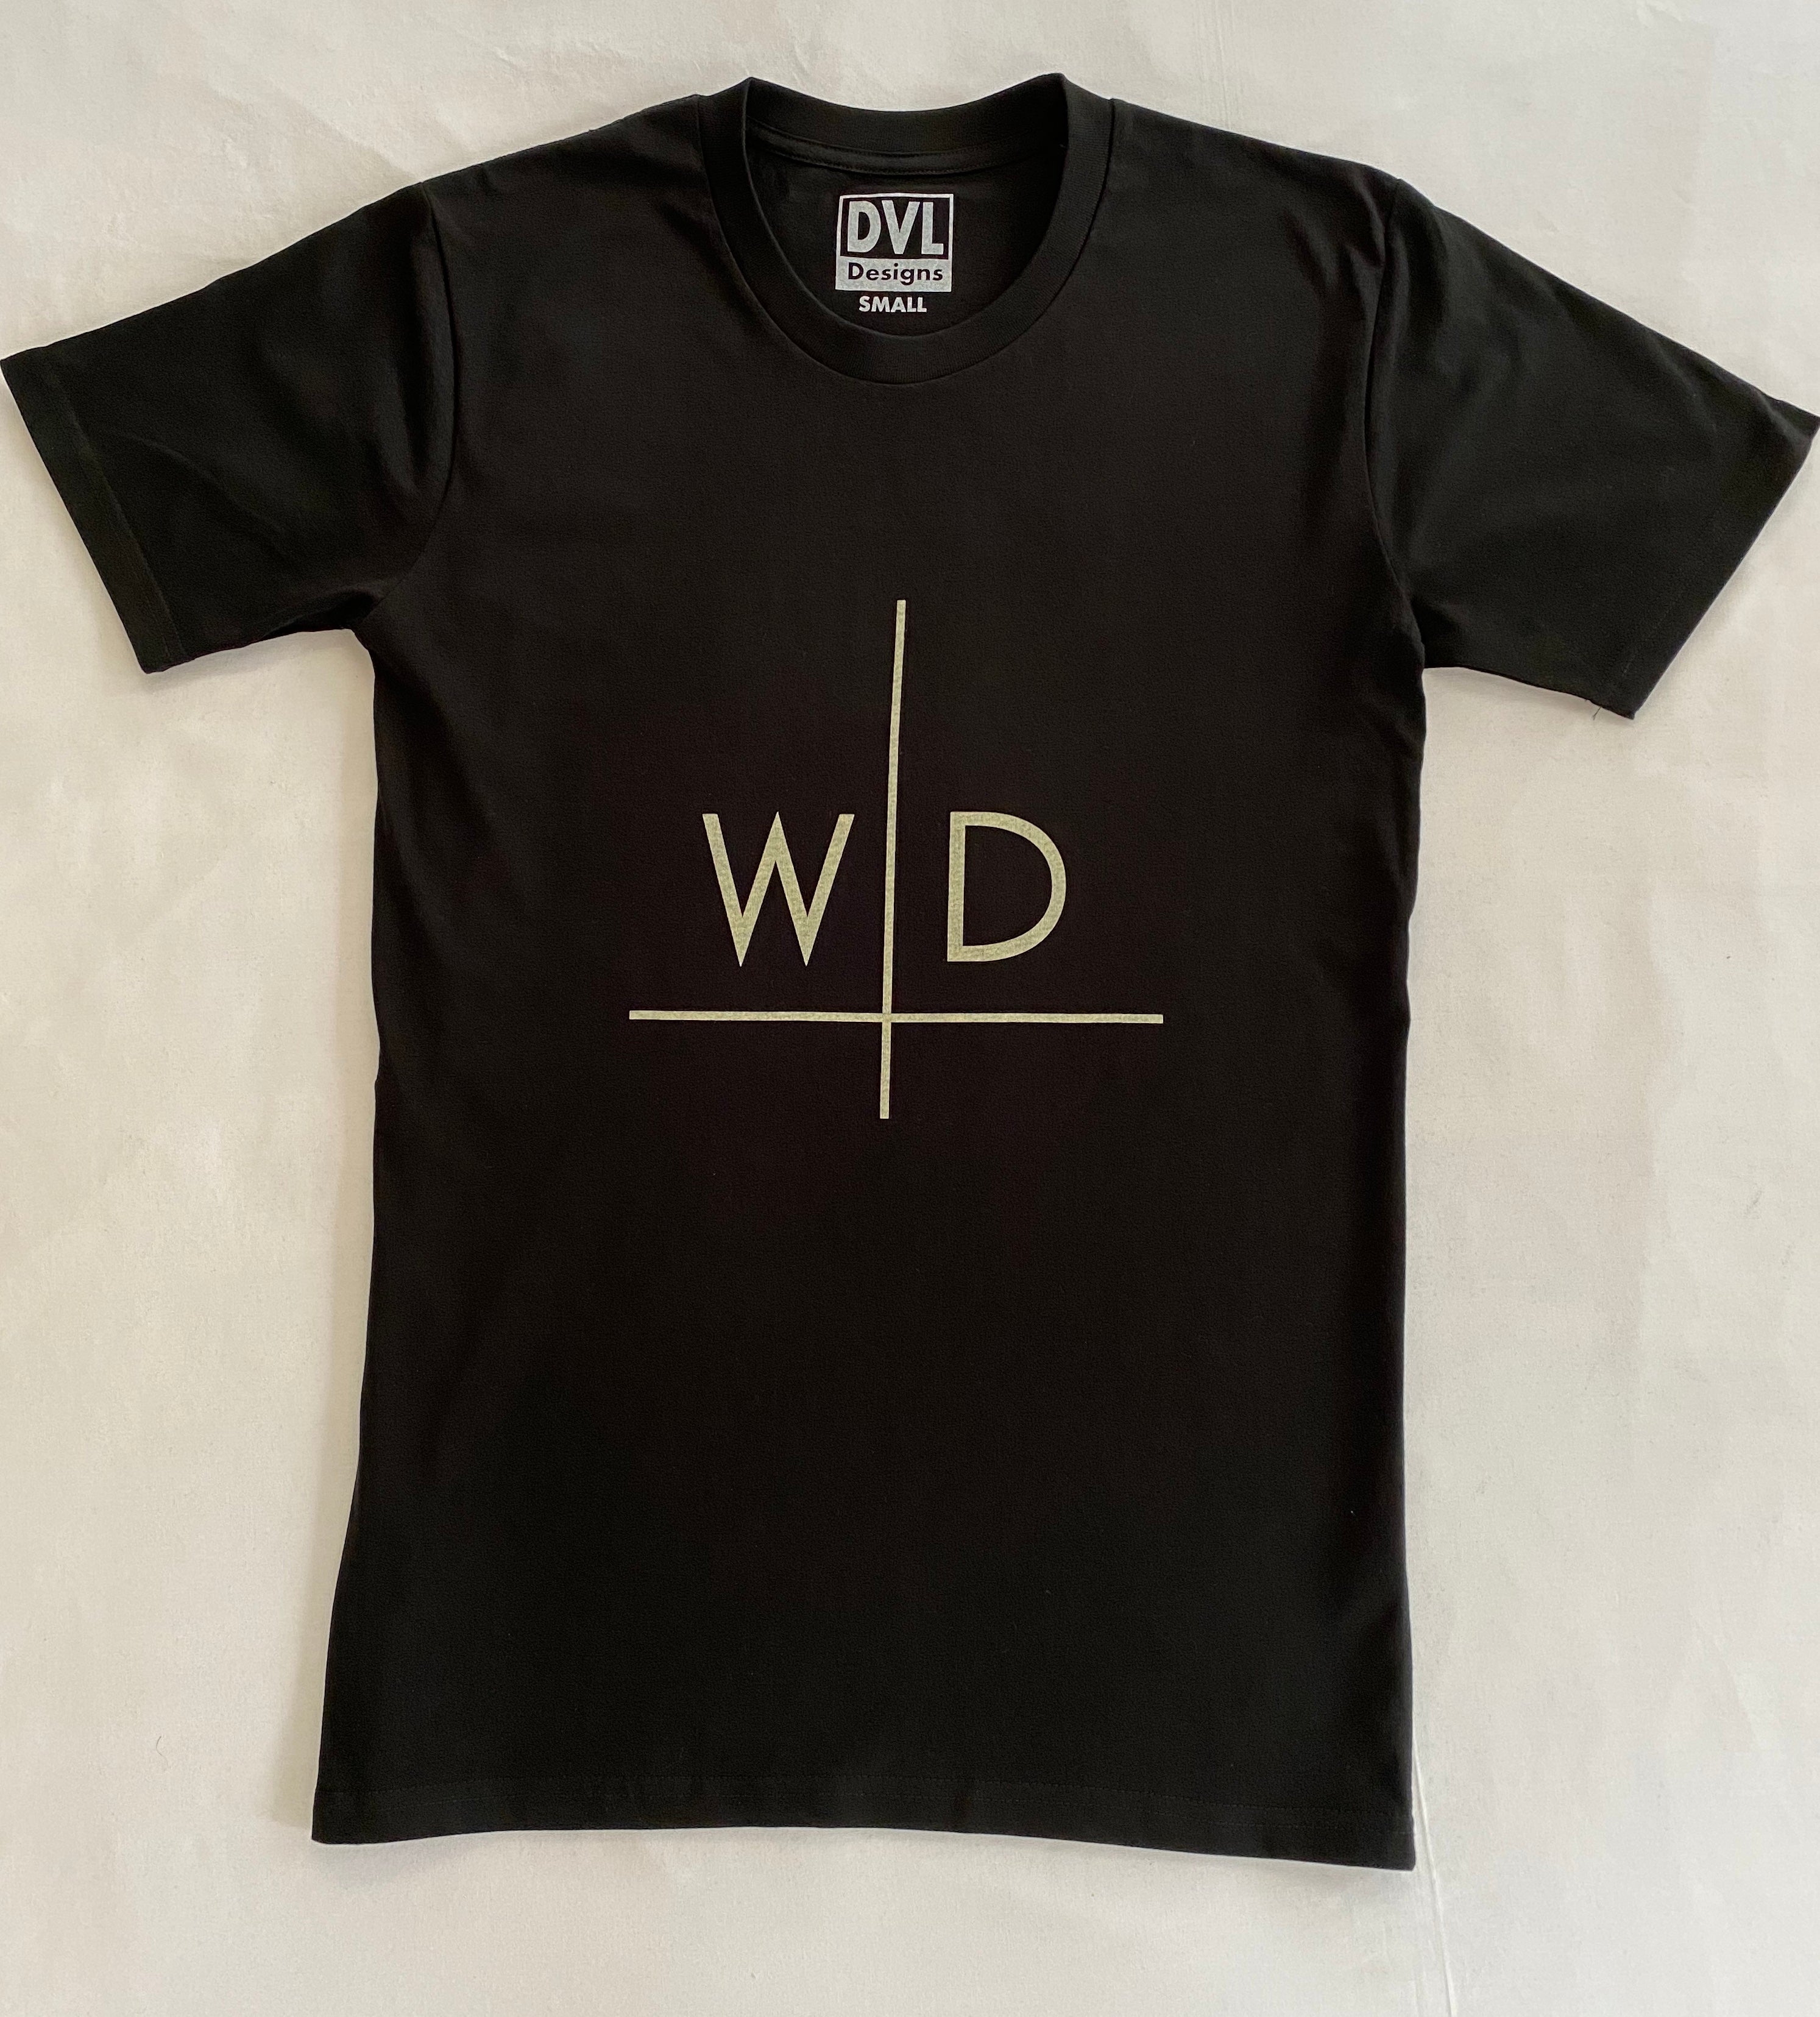 Quick design utilizing wd initials | Logo design contest | 99designs